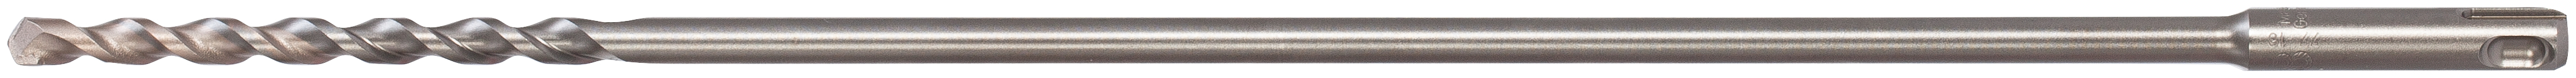 fischer Punta martello perforatore SDS Plus II PV 8X100X400 (1 Pz.) Punta da trapano per l?installazione di tasselli per l?isolamento con perforazione pi veloce e precisa su laterizio..